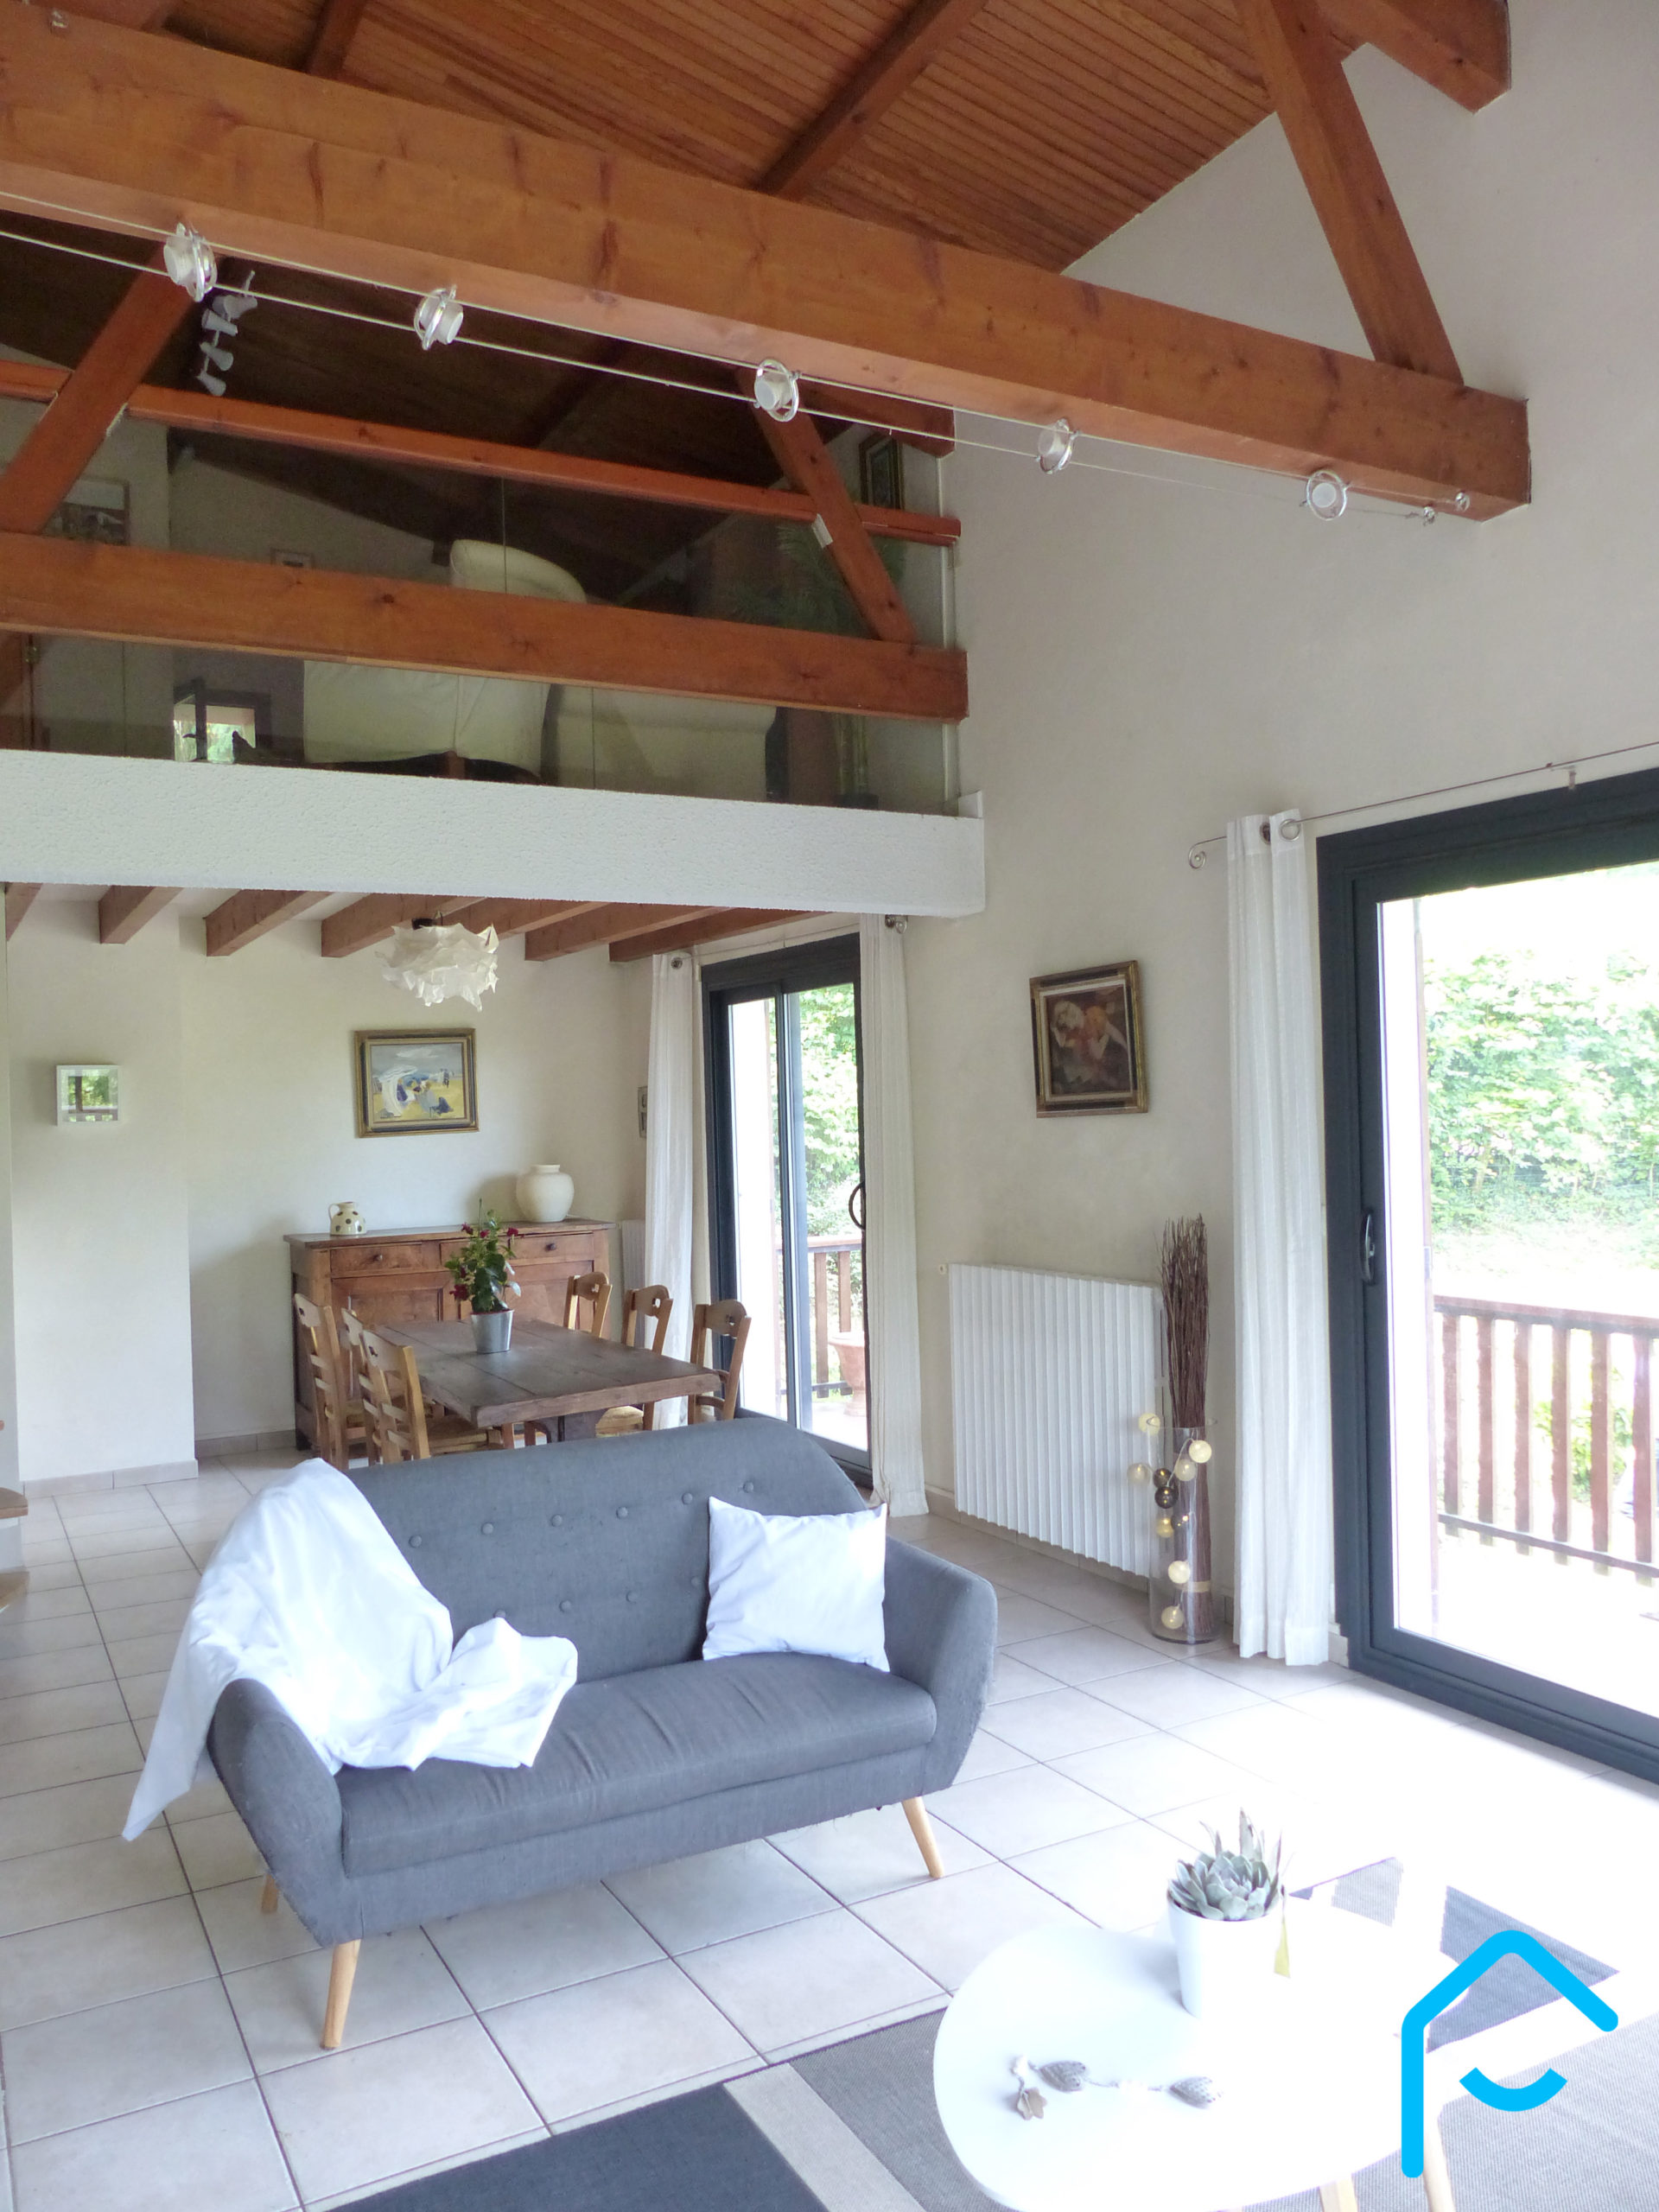 A vendre Savoie Chambéry Jacob-Bellecombette maison individuelle terraini 5 chambres quartier résidentiel rare à la vente vue 15